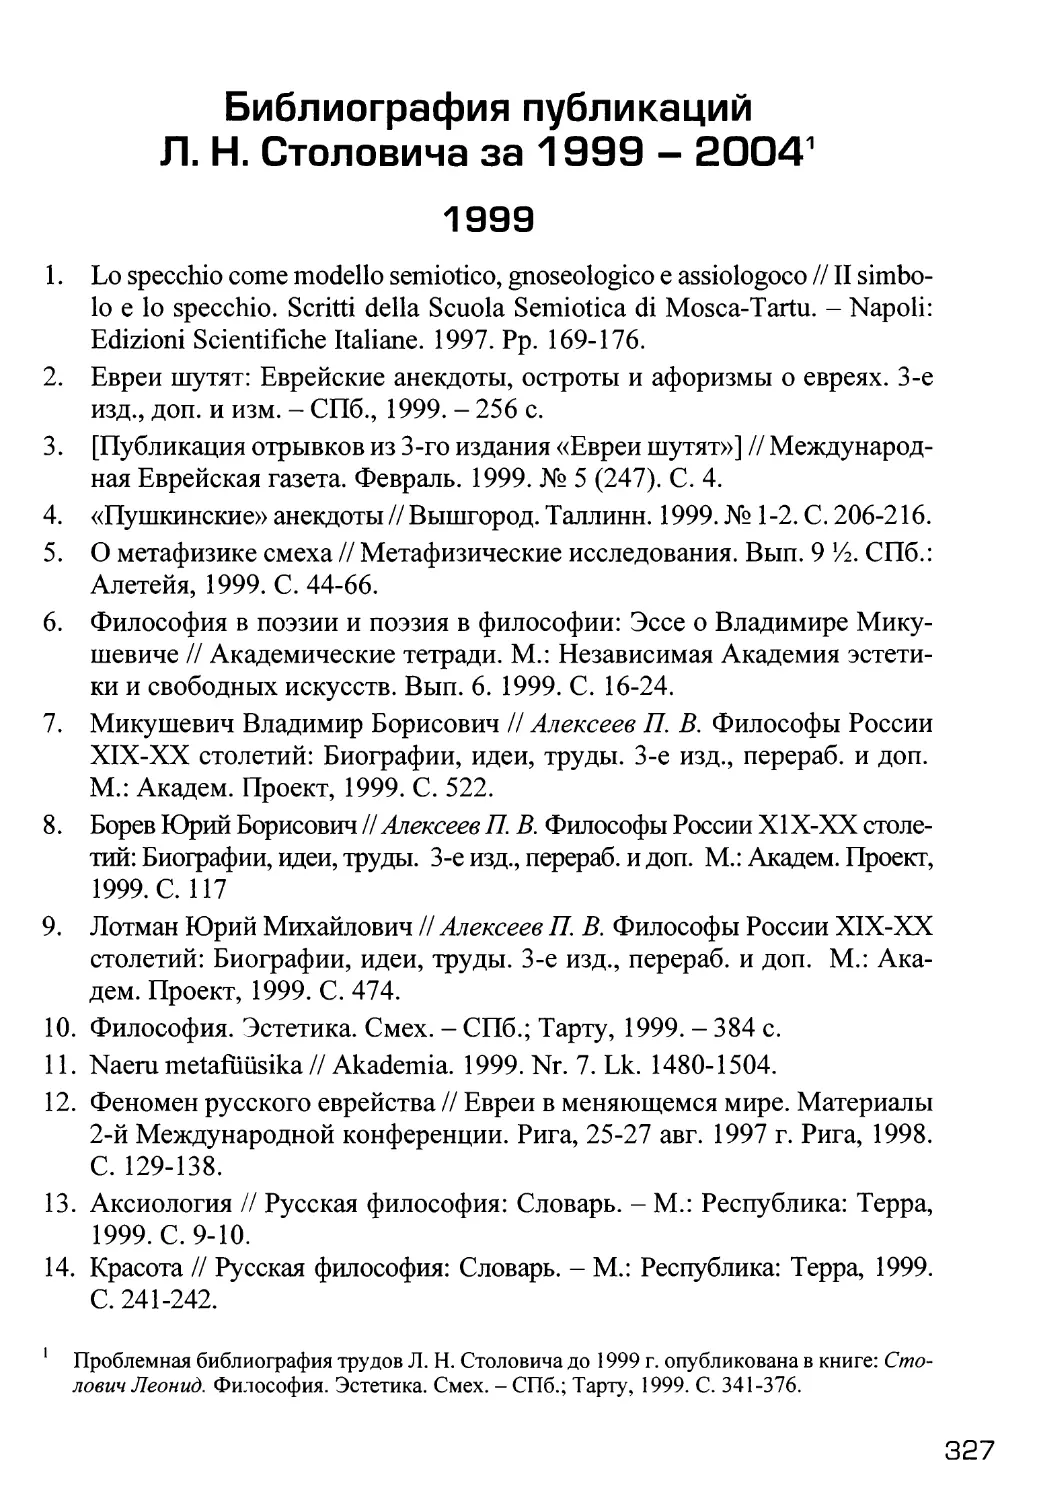 Библиография публикаций Столовичаза 1999-2004